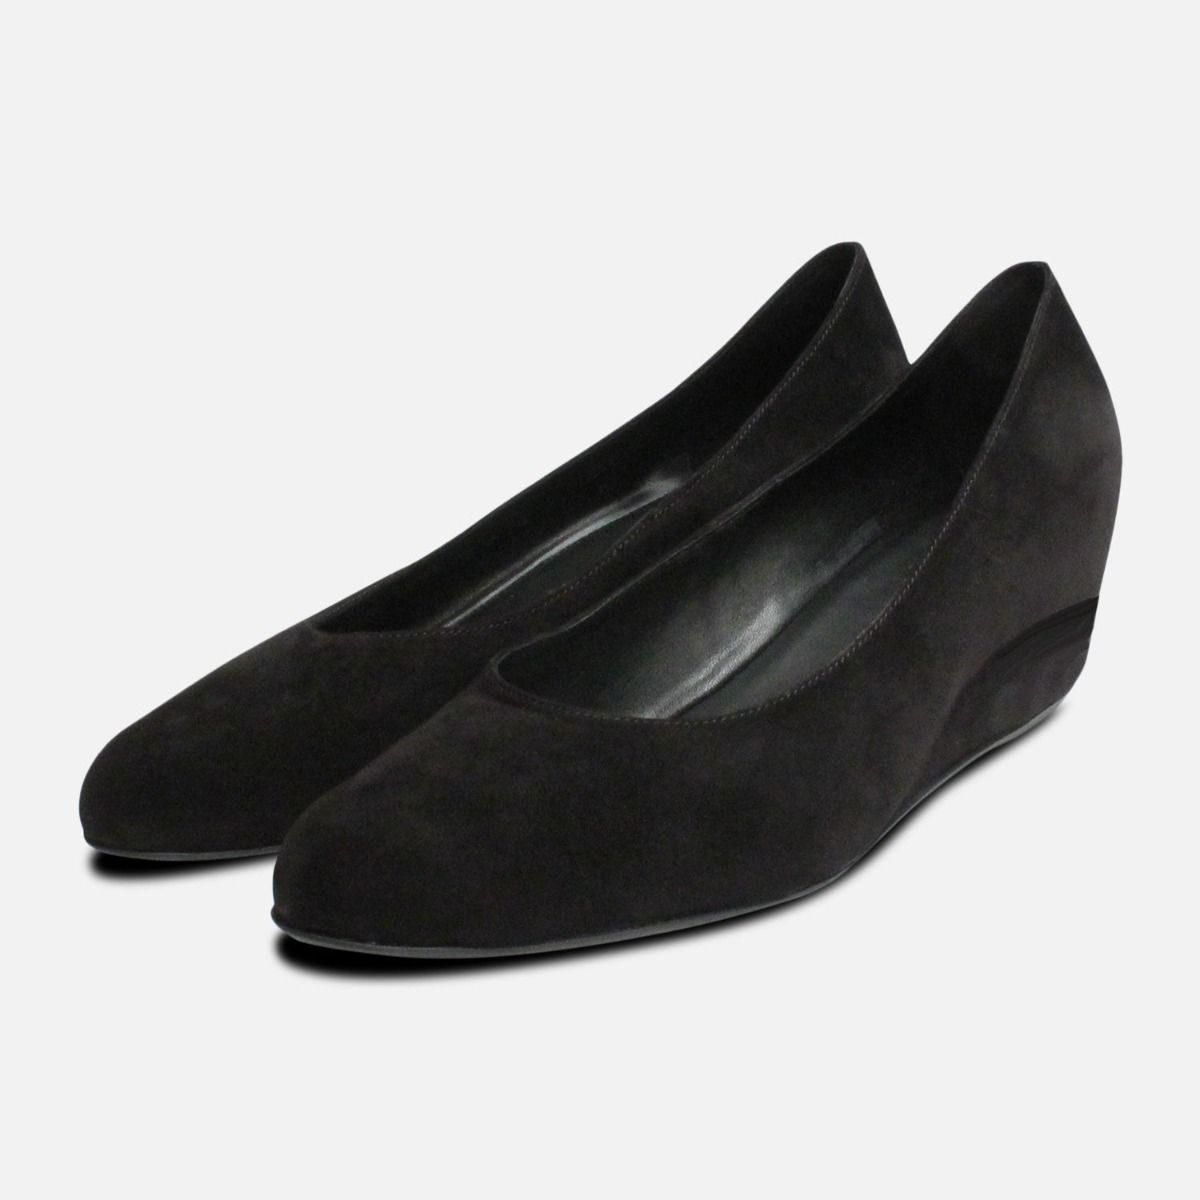 ladies black wedge shoes